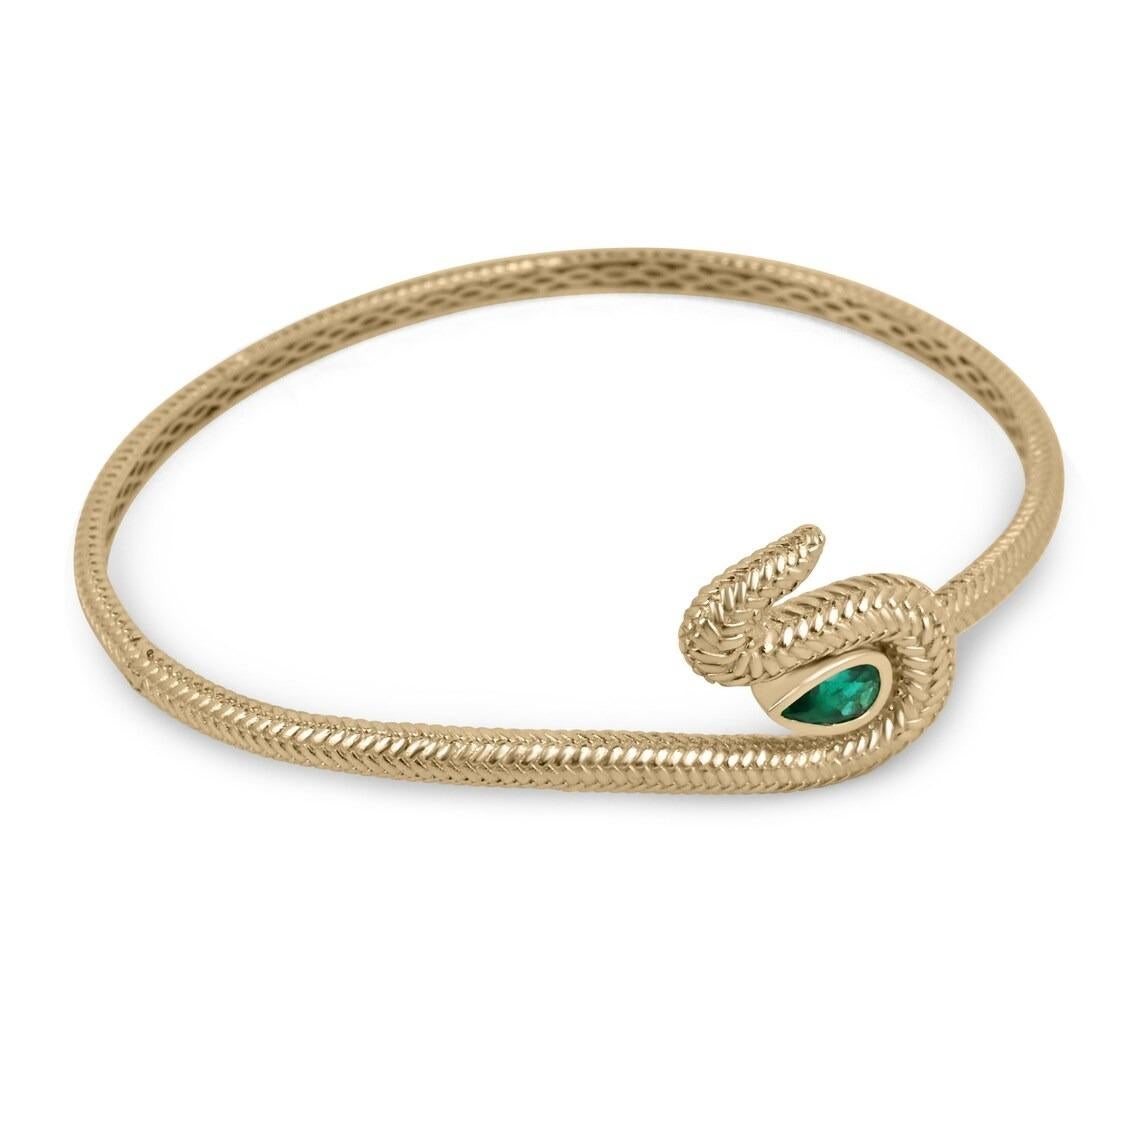 Voici l'exquis bracelet manchette en serpent d'émeraude, un chef-d'œuvre de joaillerie conçu par la talentueuse Natalie Rodriguez. Ce bracelet manchette captivant est orné d'écailles de serpent complexes, dégageant une aura de mysticisme et